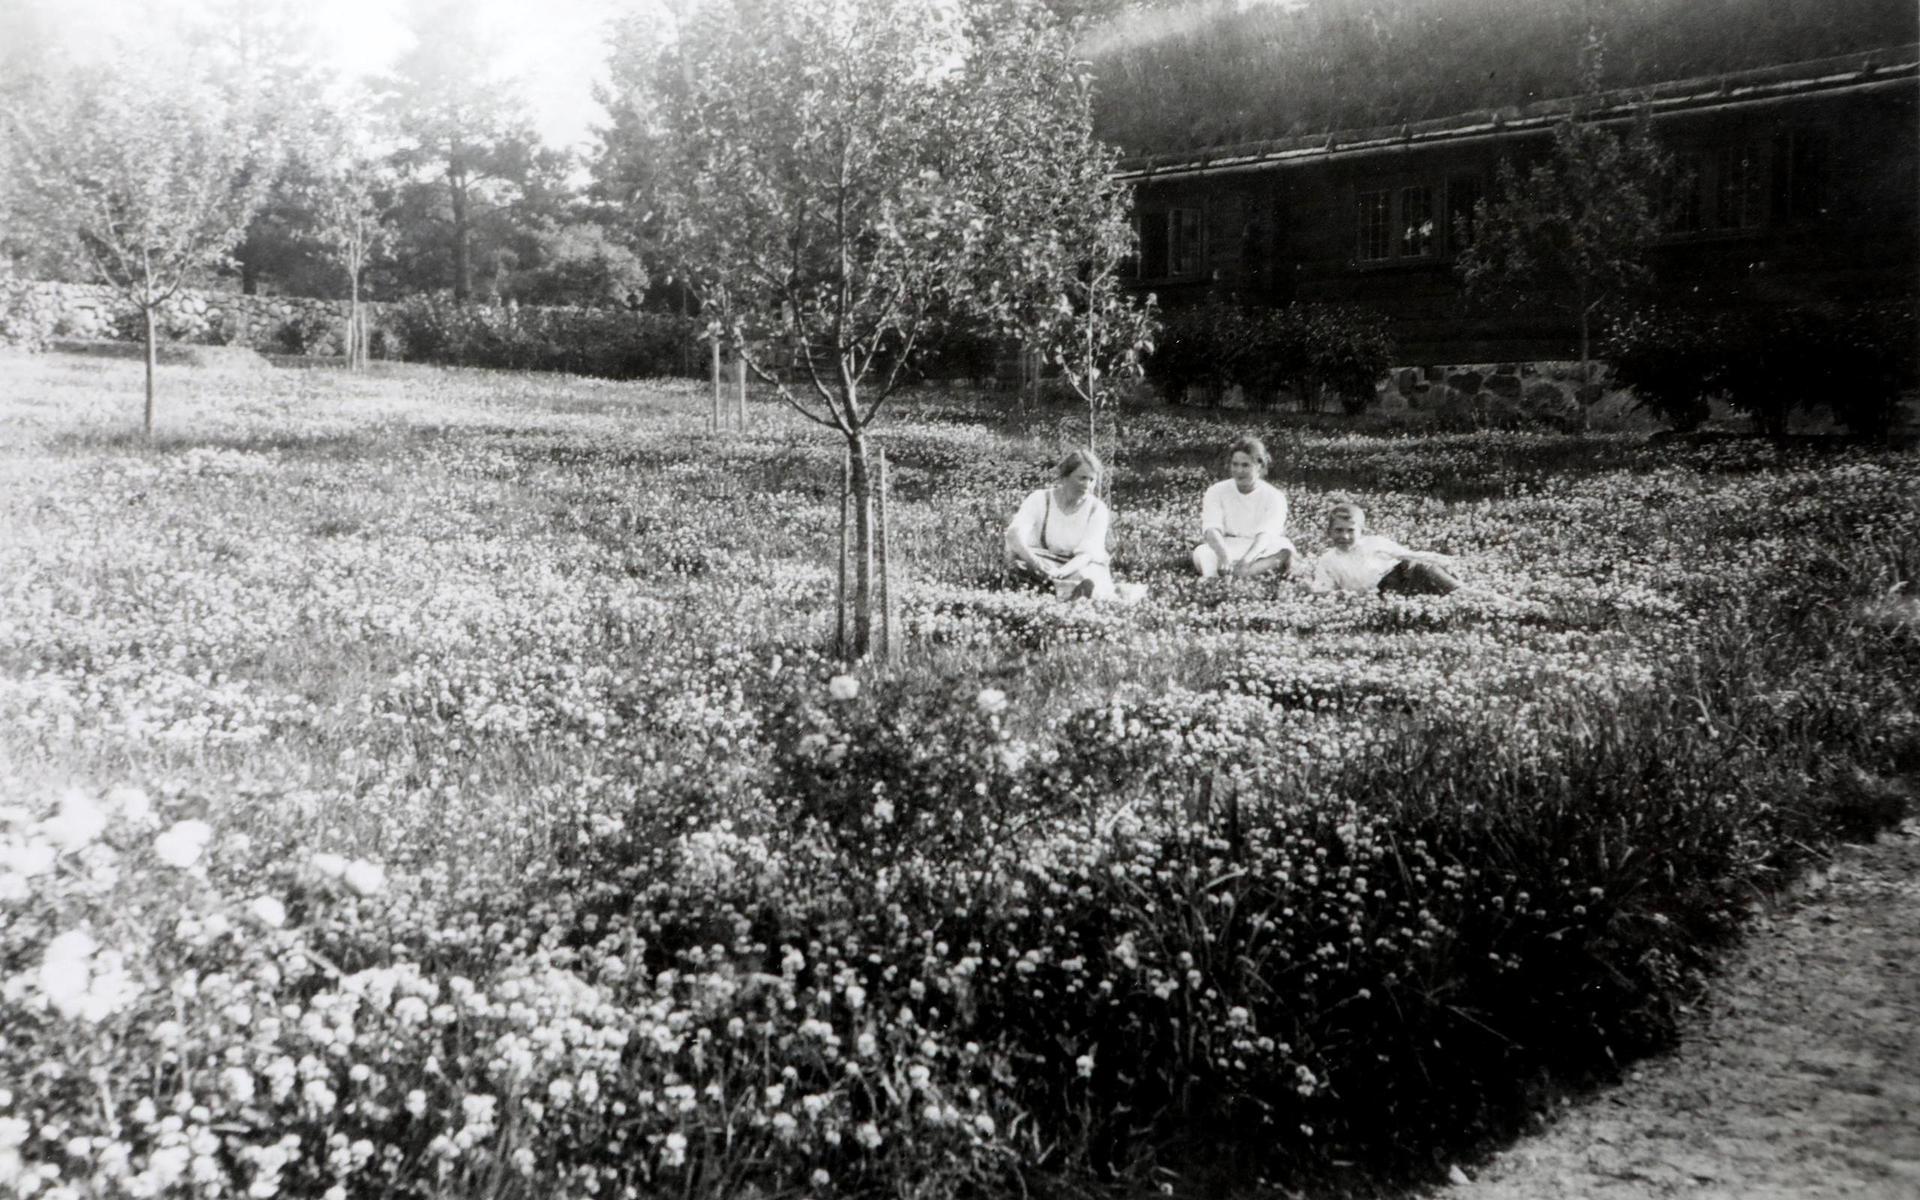 Det var 1917 som Ruth och Sigfrid Ericson bestämde sig för att skaffa en sommarbostad nära Breared, som var Ruths hemby. De köpte 14 hektar mark utanför Simlångsdalen av kyrkan och satte igång att skapa det som skulle bli den unika skogsträdgården Vargaslätten.